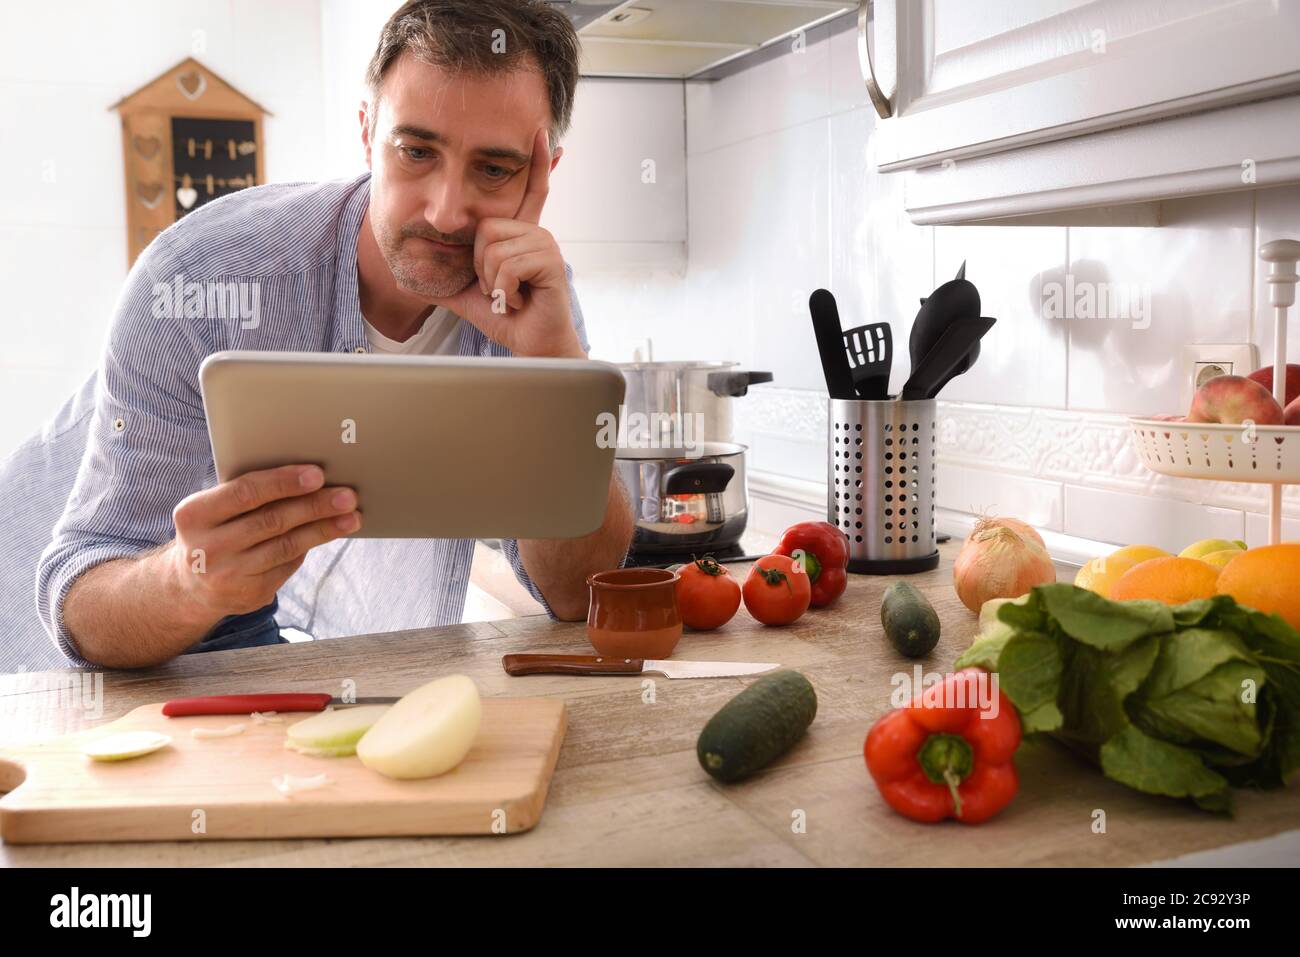 Zweifelhafter Mann, der zu Hause kocht und dabei das Rezept auf einer Tablette ansieht, die mit der Hand auf dem Gesicht auf der Küchenbank liegt Stockfoto